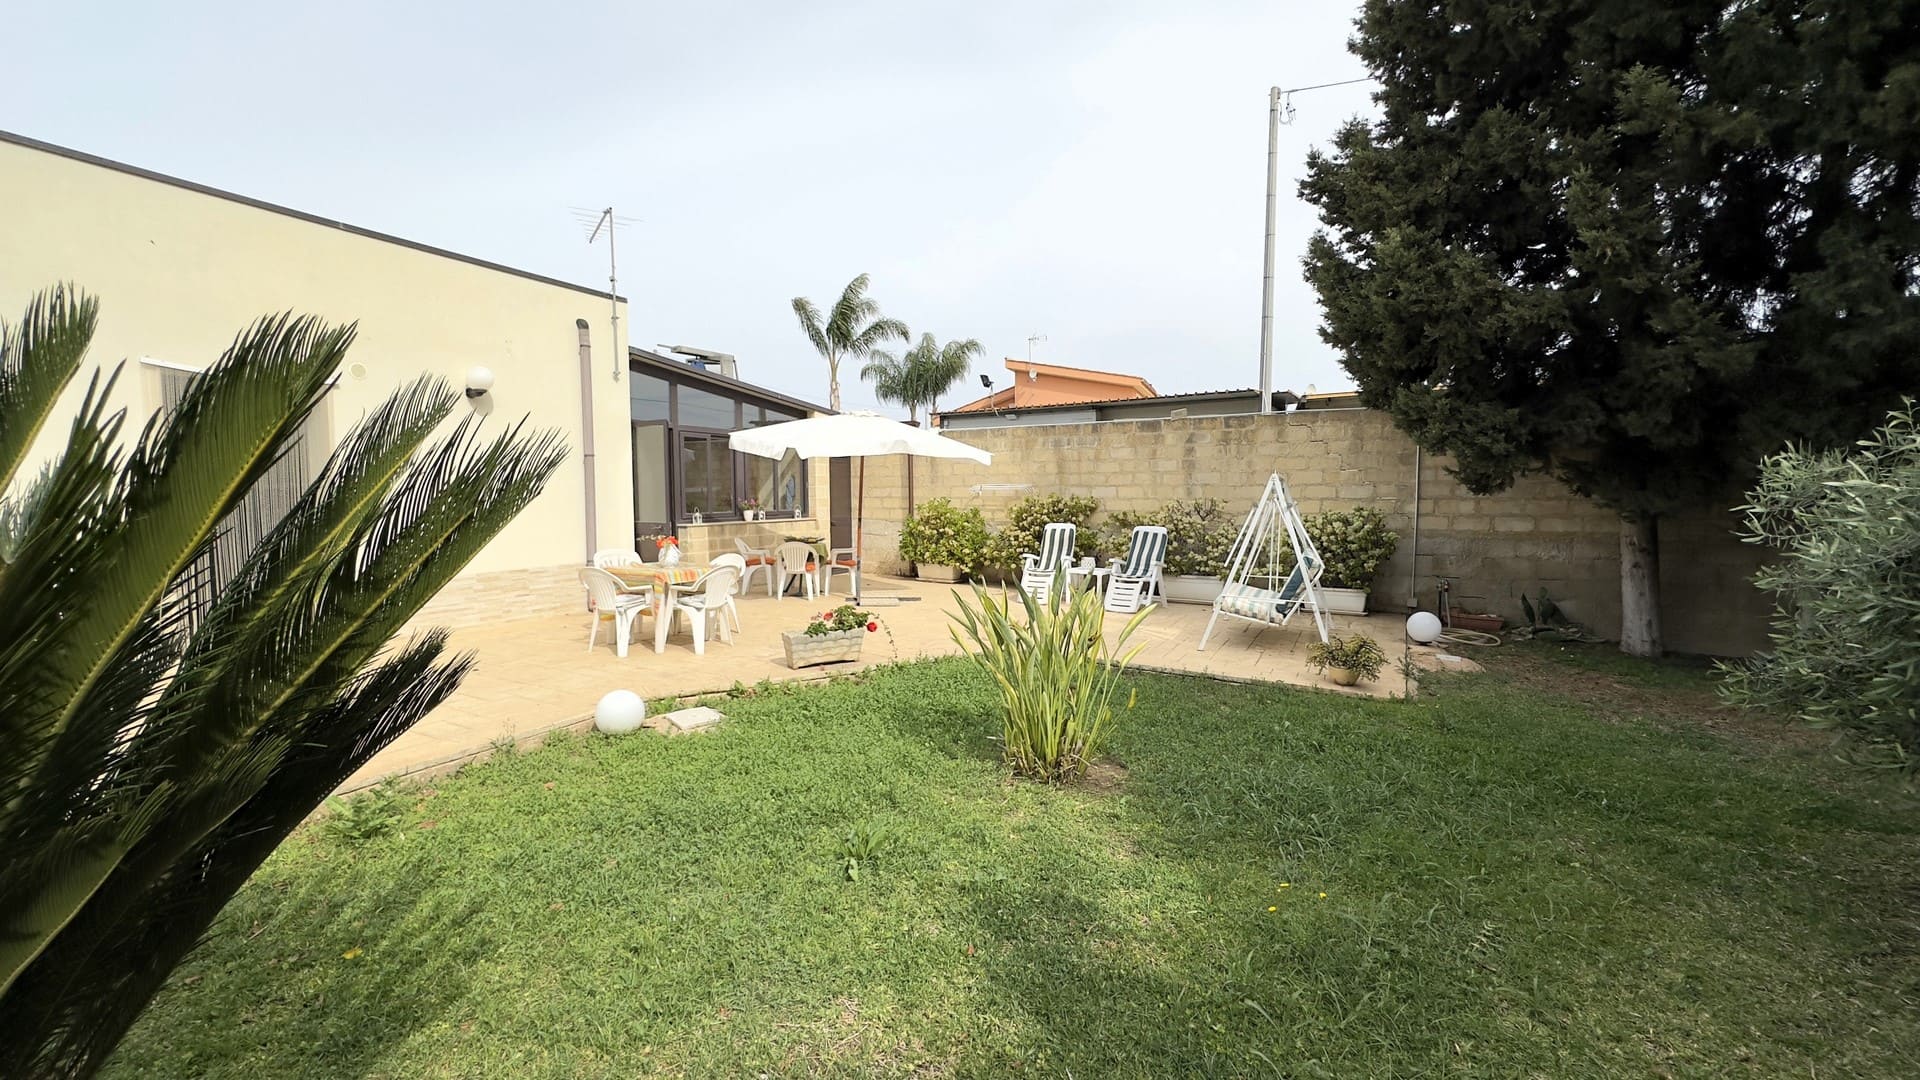 villa indipendente con giardino in affitto a siracusa